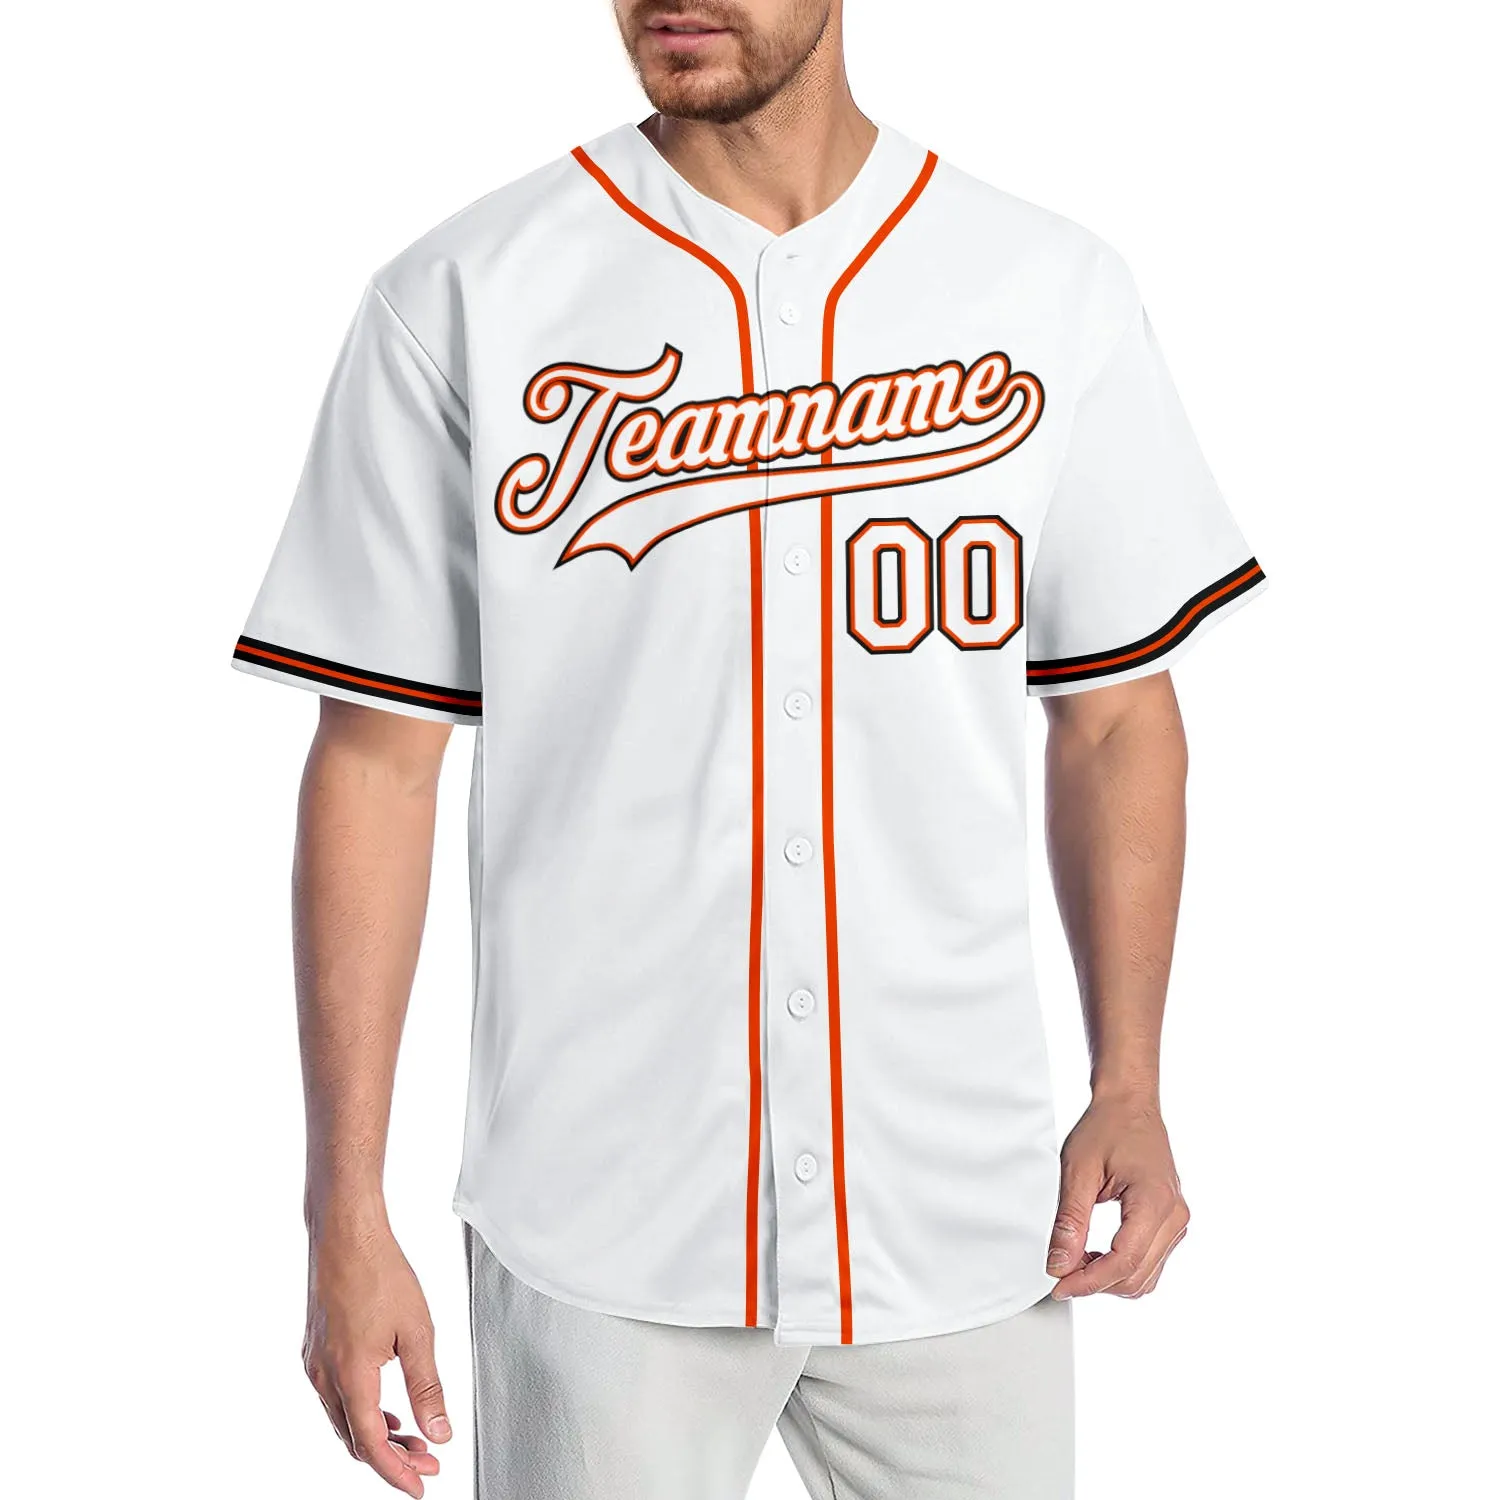 Jersey di baseball autentico bianco-arancione bianco